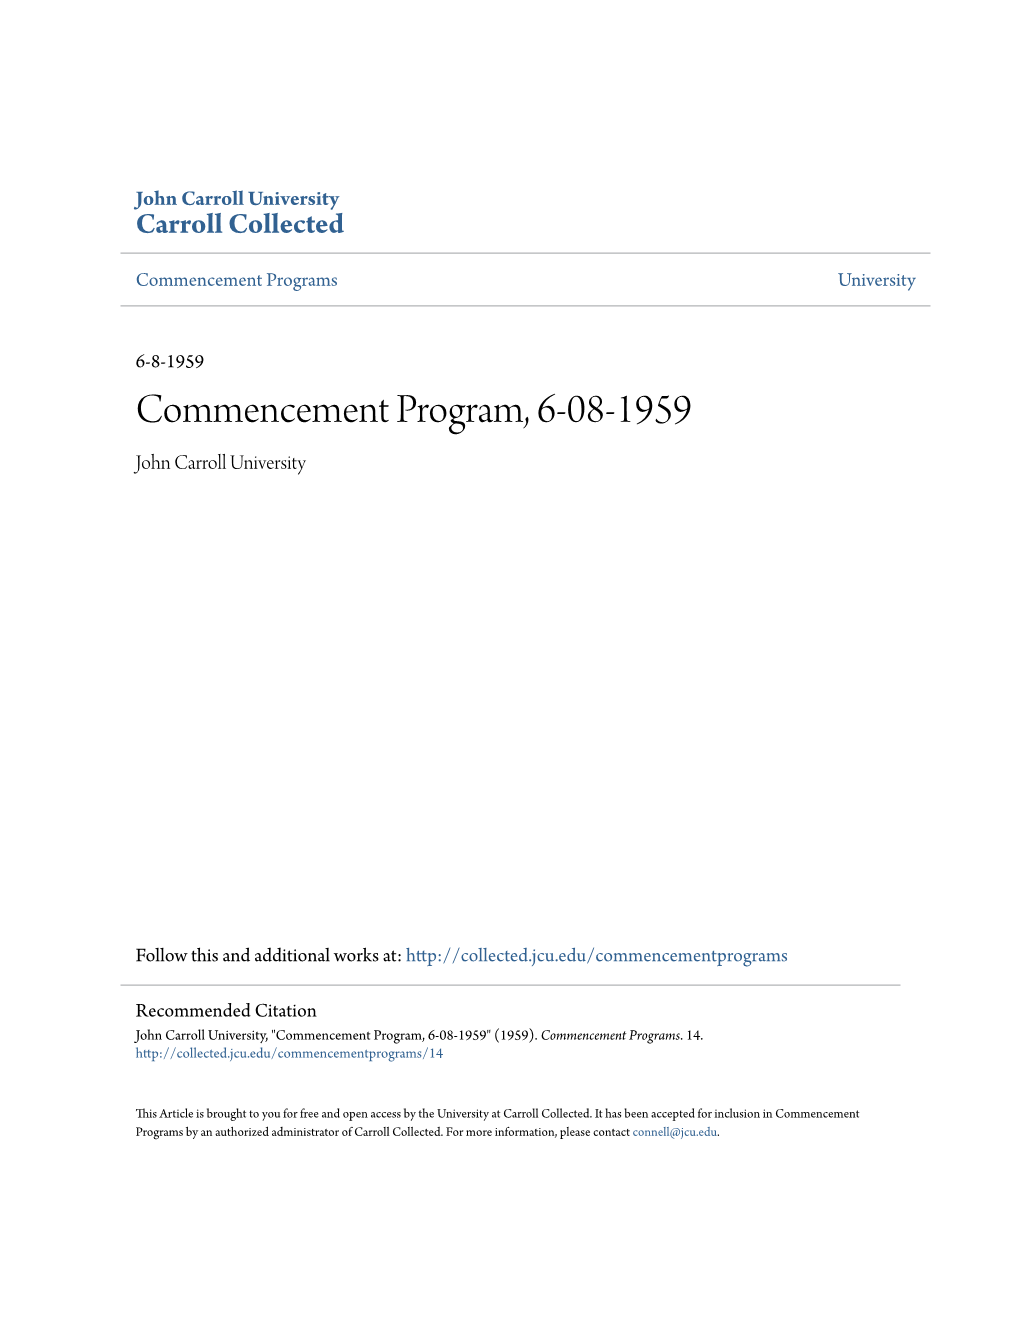 Commencement Program, 6-08-1959 John Carroll University